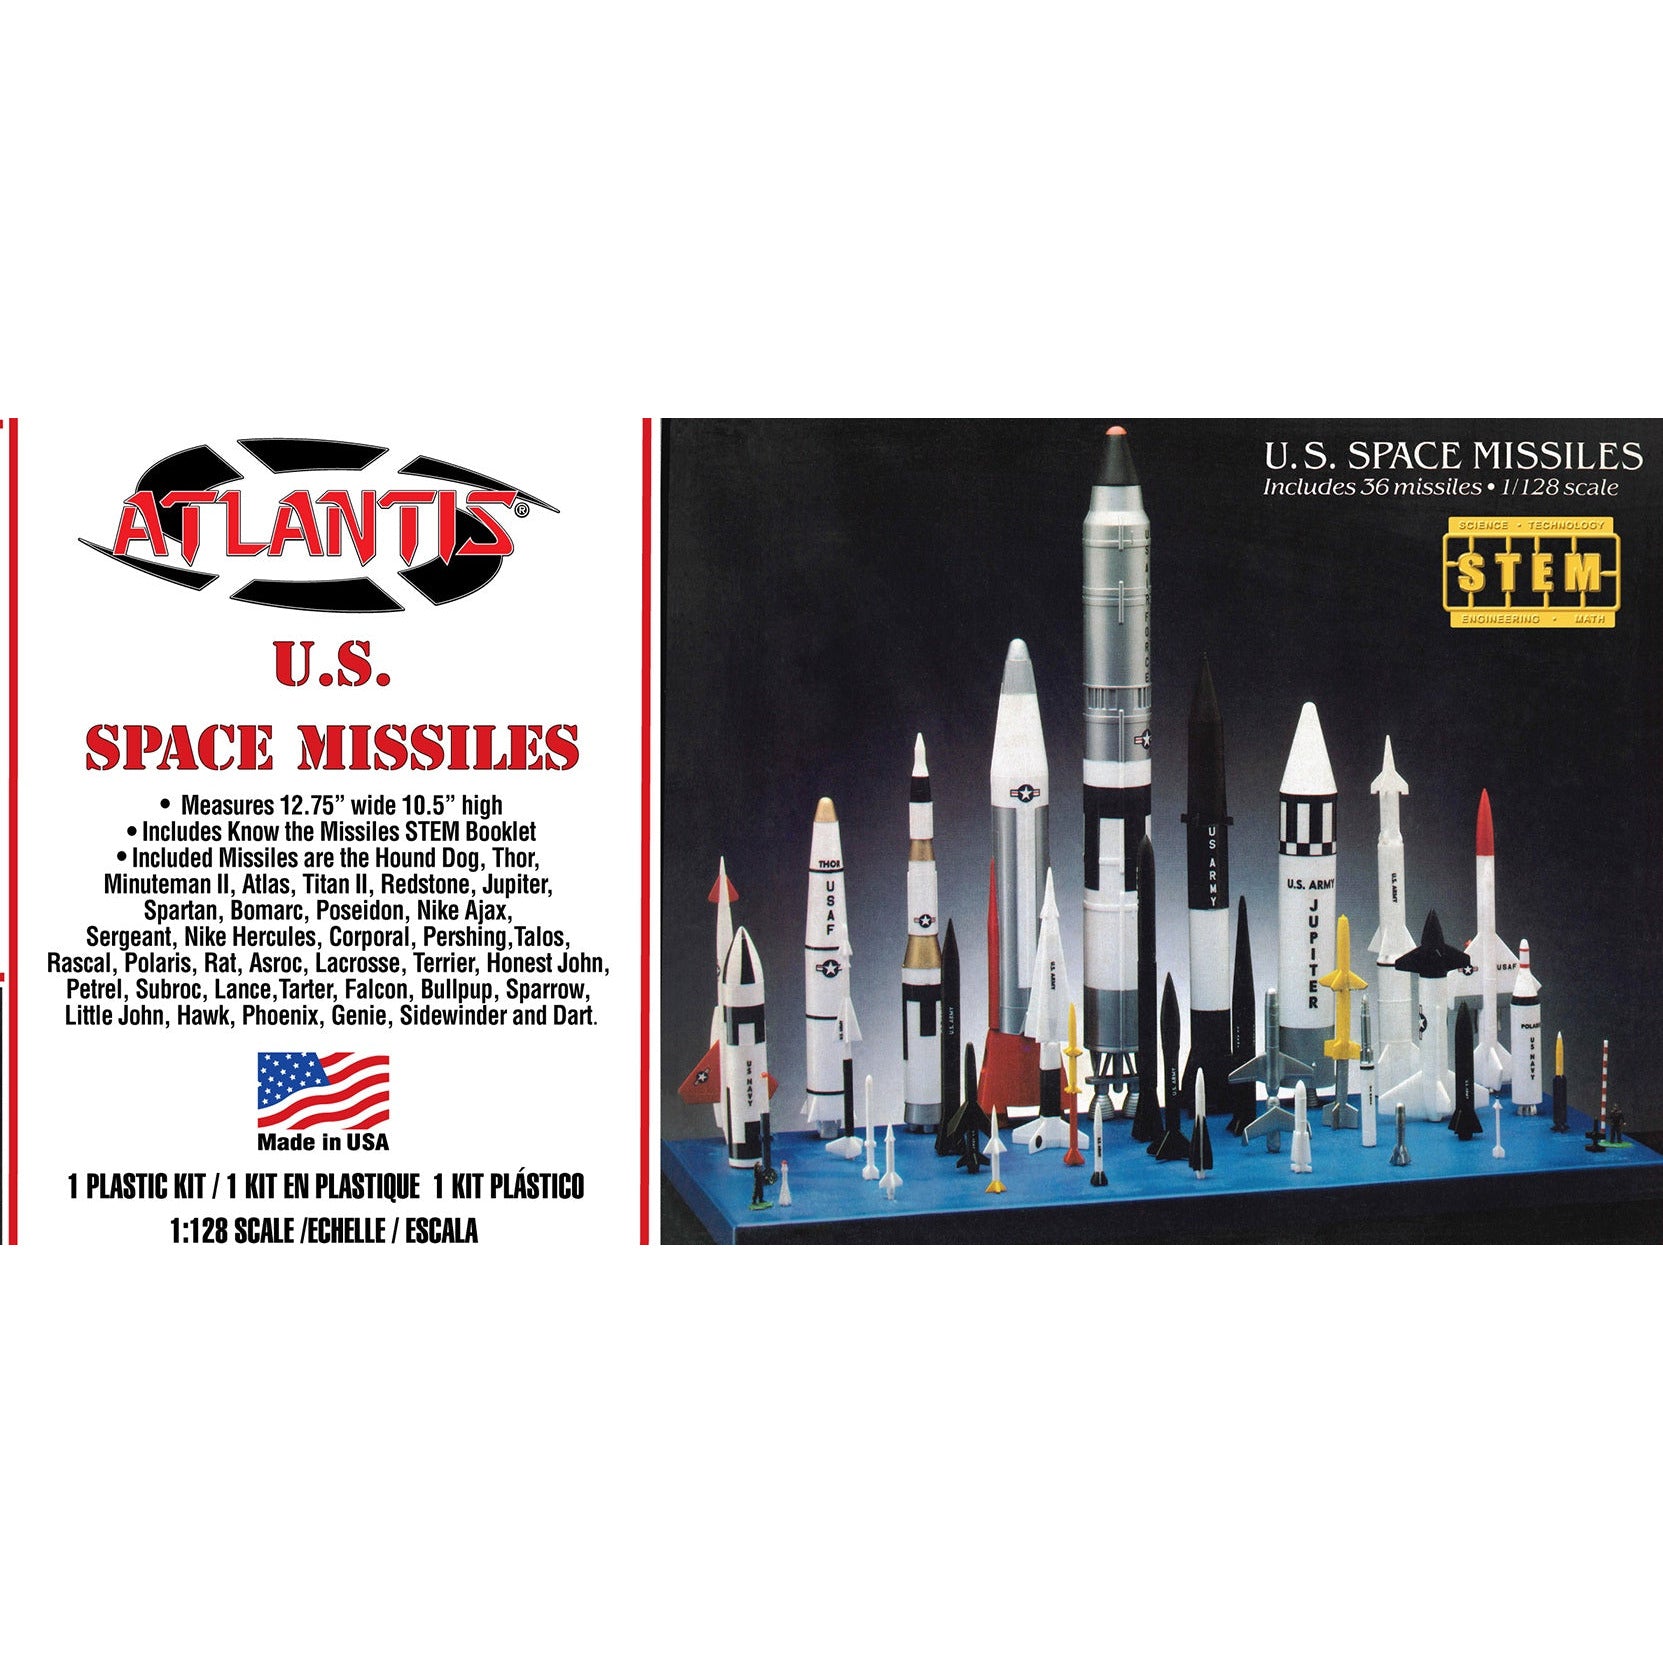 U.S. Space Missiles 36 Missiles 1/128 #6871 by Atlantis